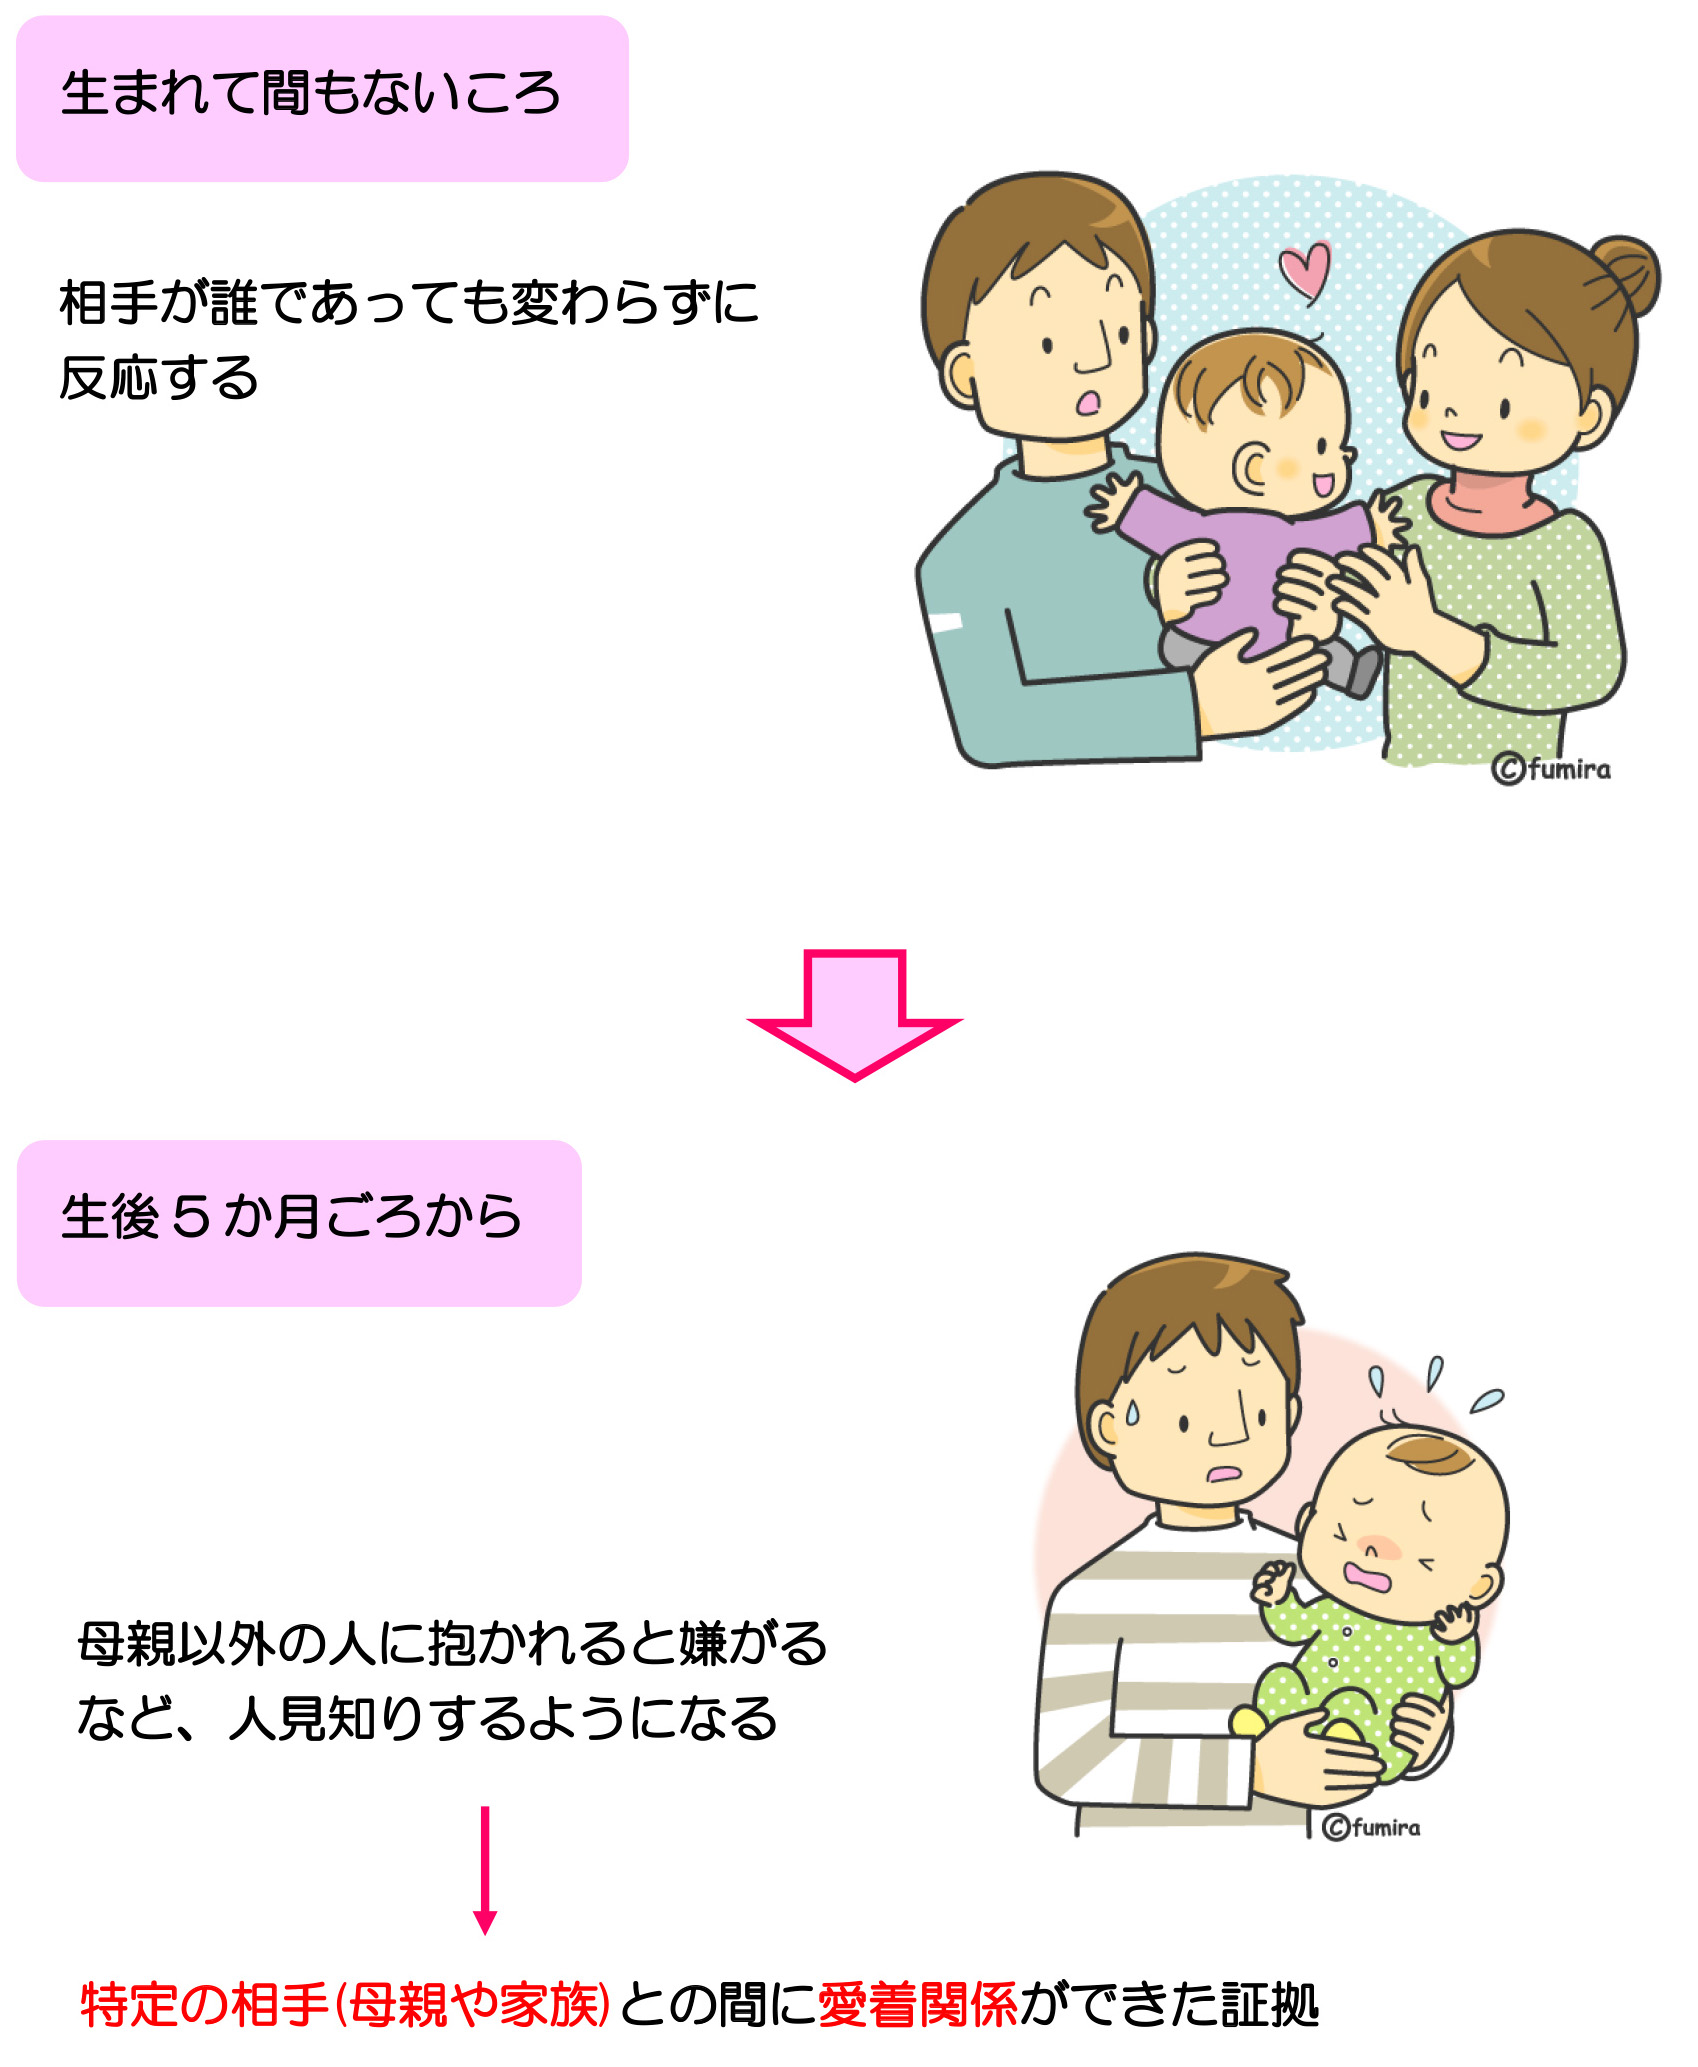 親子の絆はいつからはじまる 愛着の発達ー 発達 エコチル調査 大阪ユニットセンター